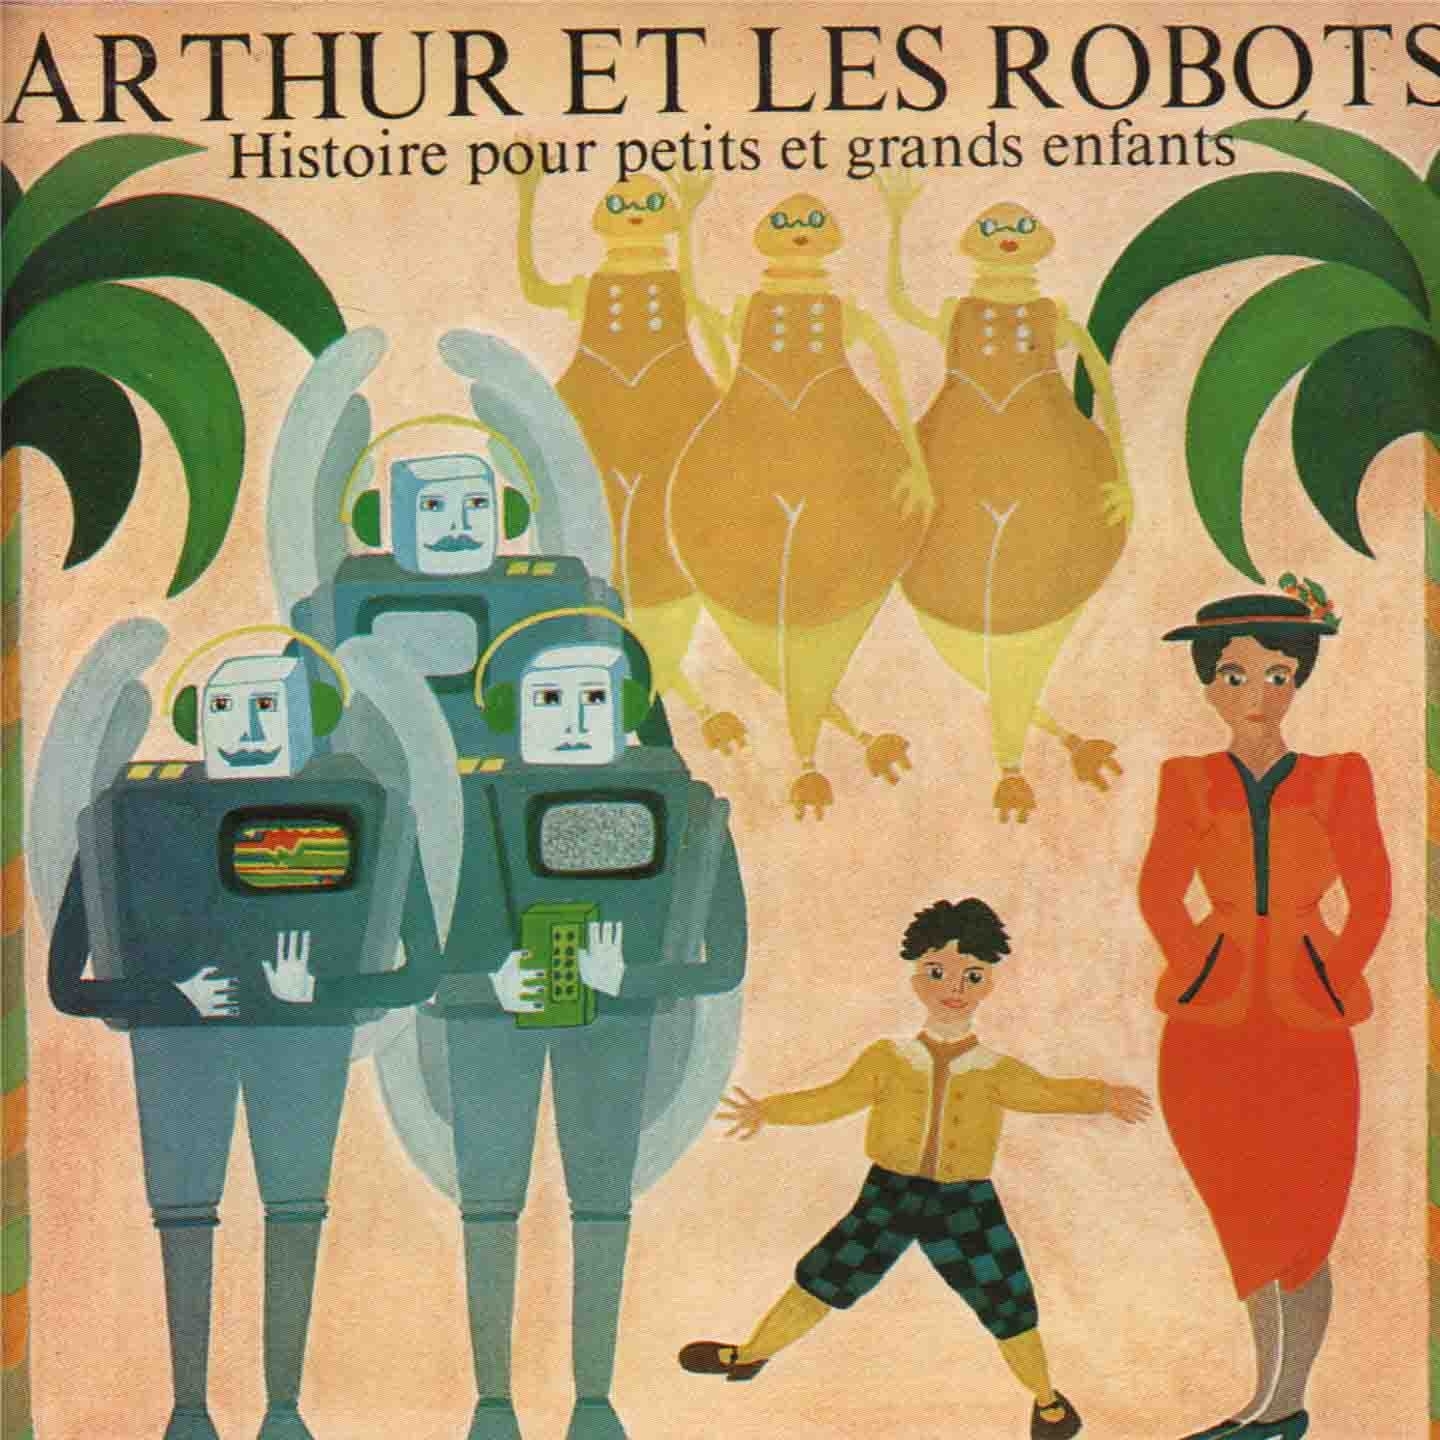 Arthur et les robots